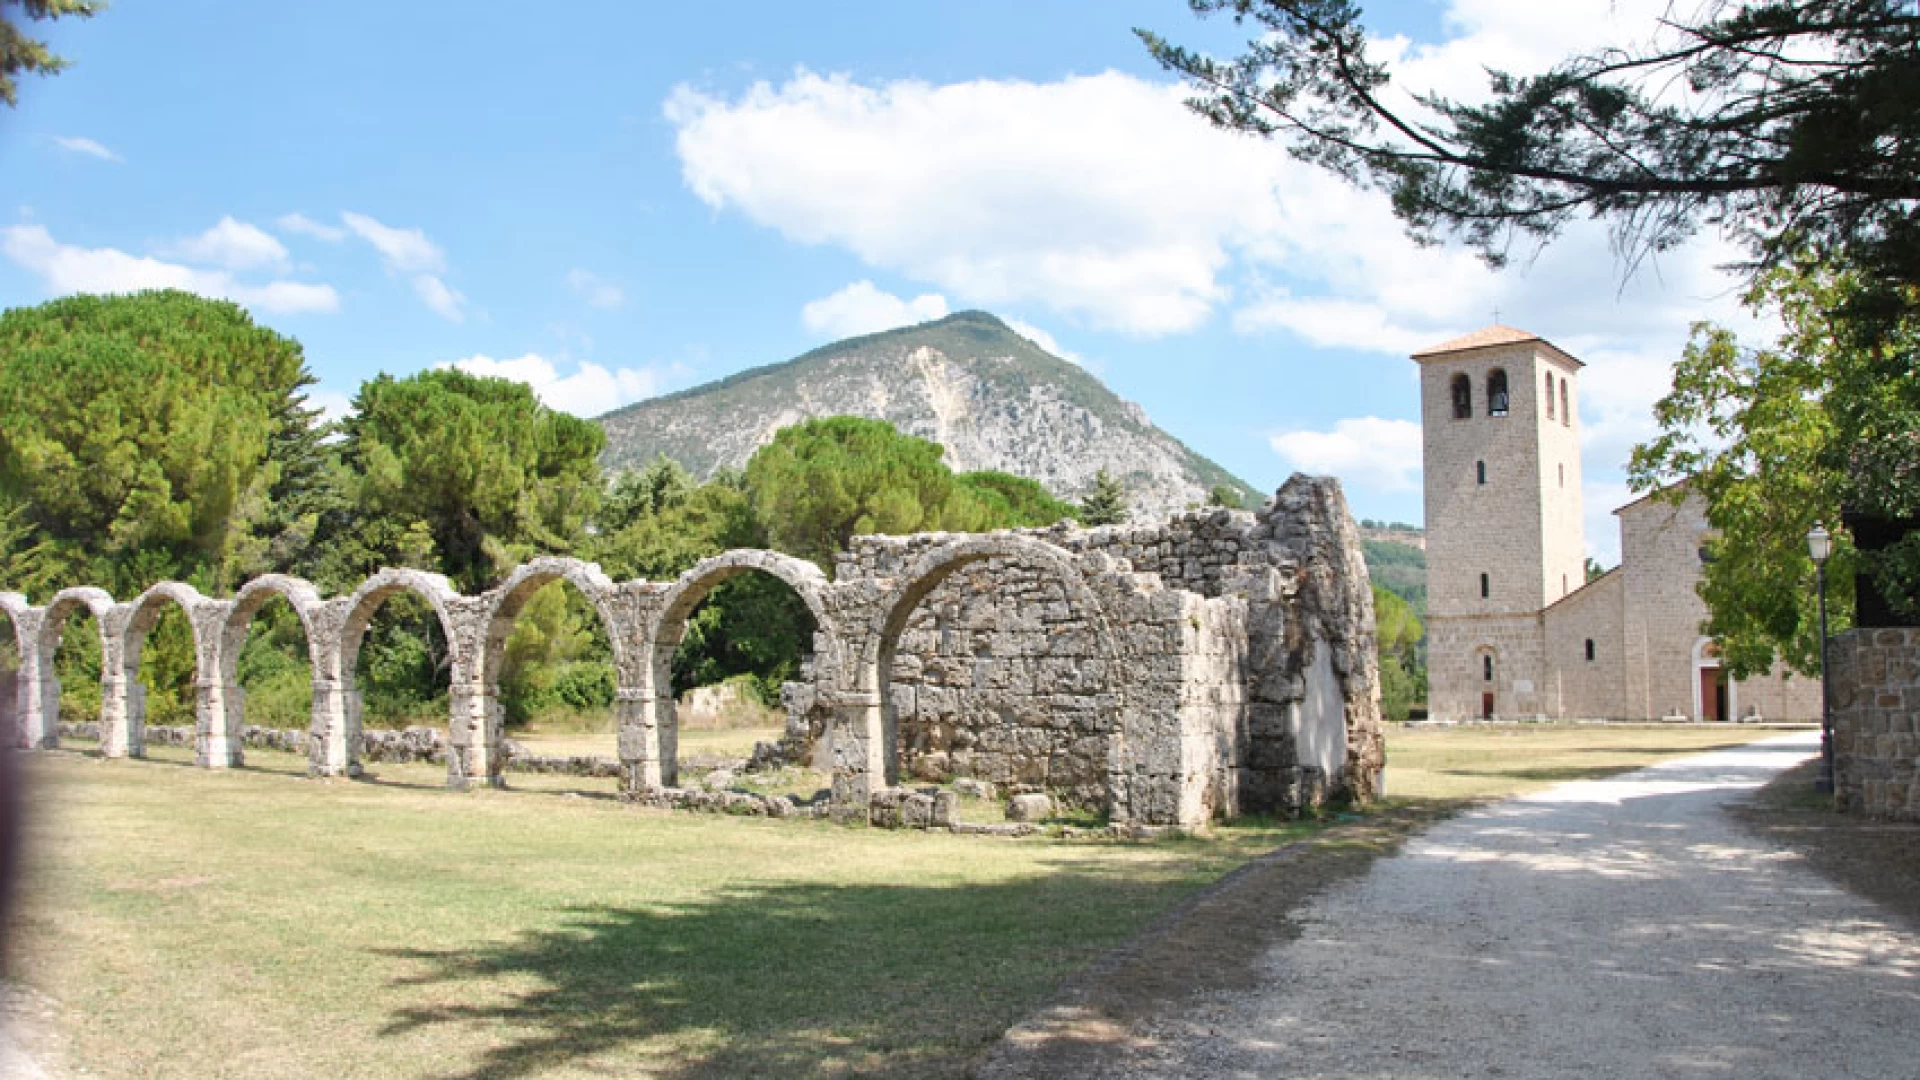 Istituzione del Parco archeologico del sito dell’Abbazia di San Vincenzo al Volturno. Scarabeo: La proposta di legge regionale è stata presentata